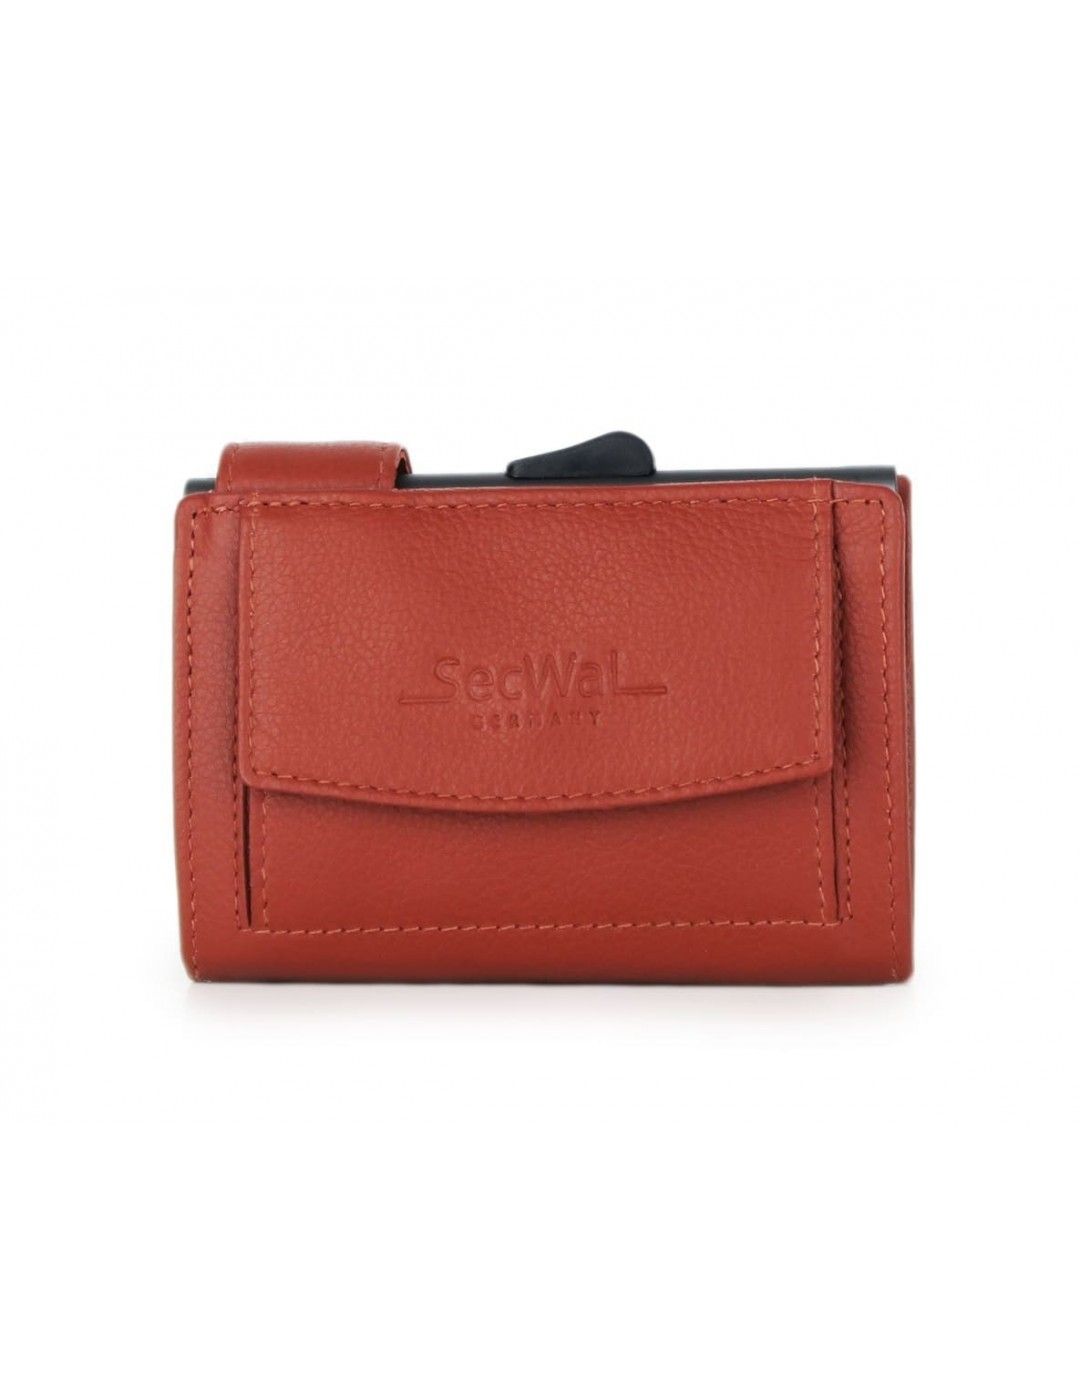 Porte-cartes SecWal DK Leather Orange fonce